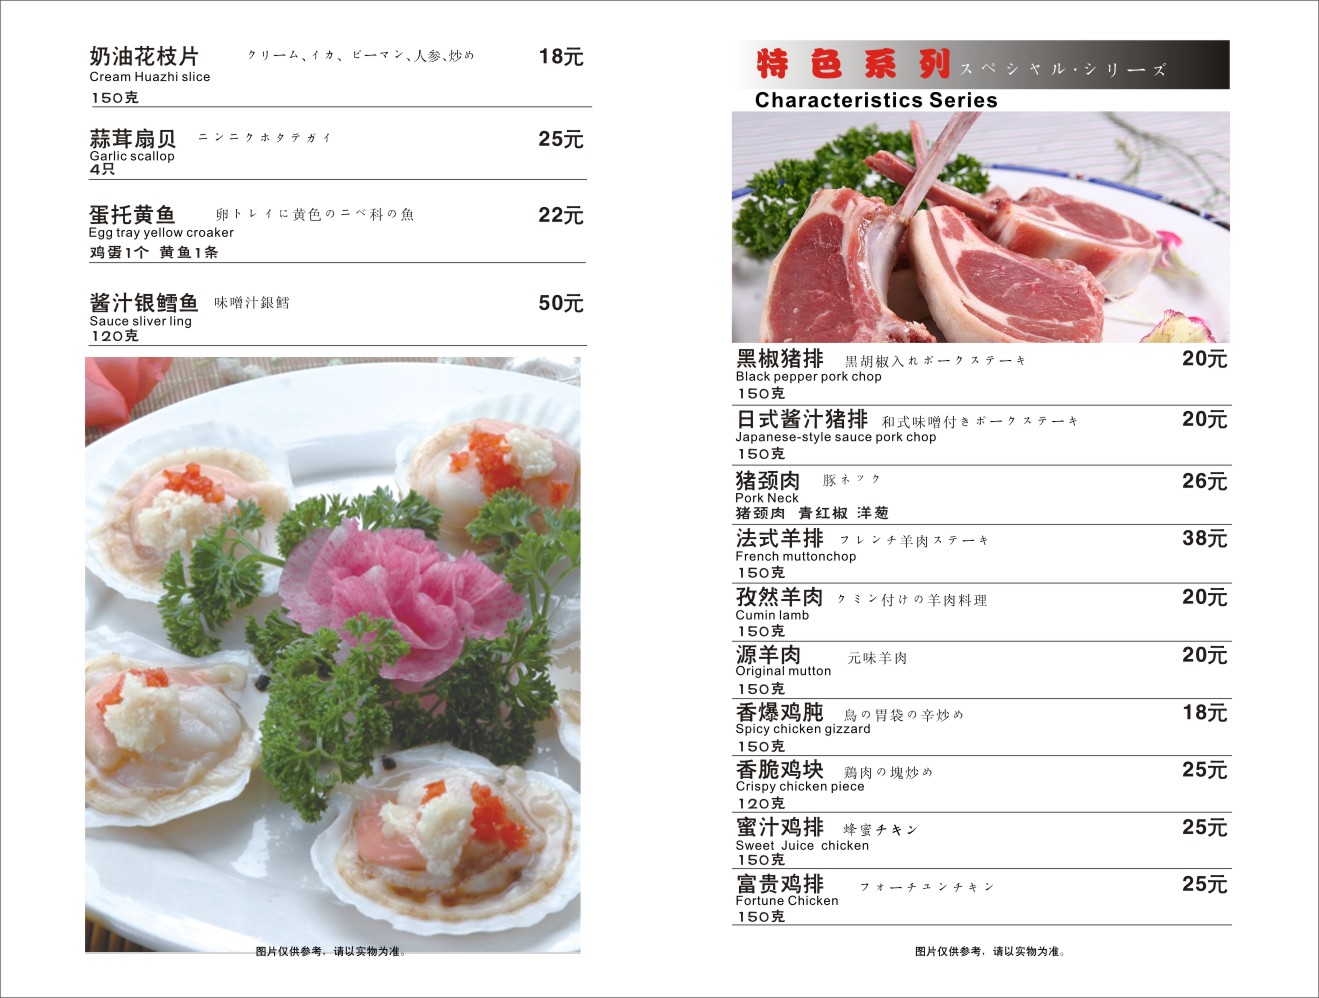 ﻿菜谱册日本铁板料理店(铁板烧) 日本料理菜谱 铁板烧菜谱